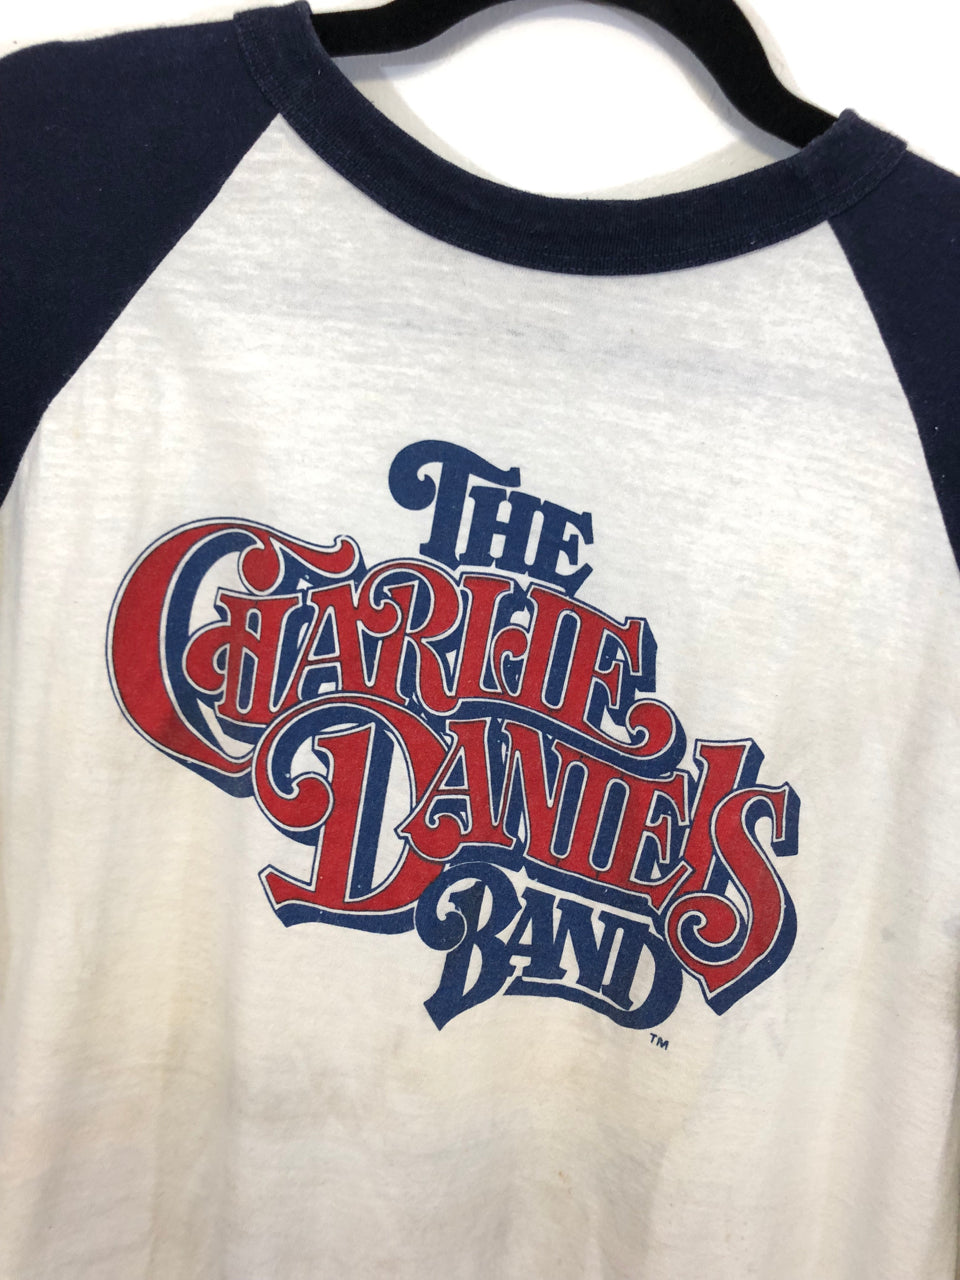 Charlie Daniels Band Windows World Tour '82 Jersey T-Shirt